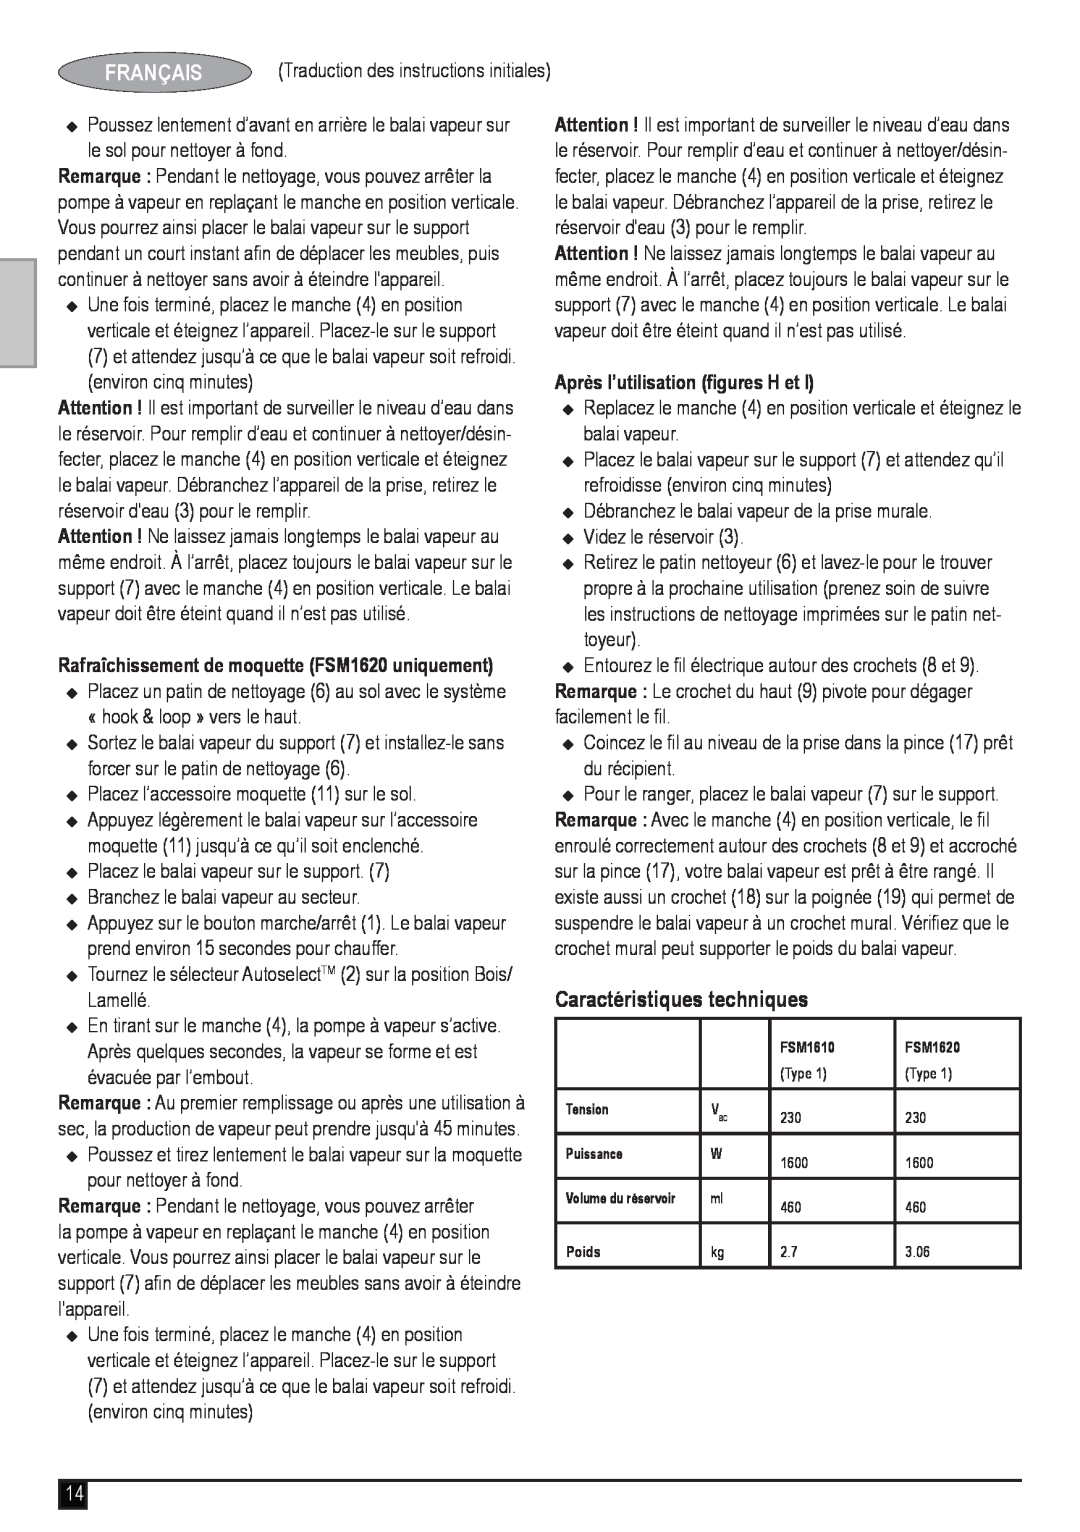 Black & Decker manual Caractéristiques techniques, Rafraîchissement de moquette FSM1620 uniquement, Français 